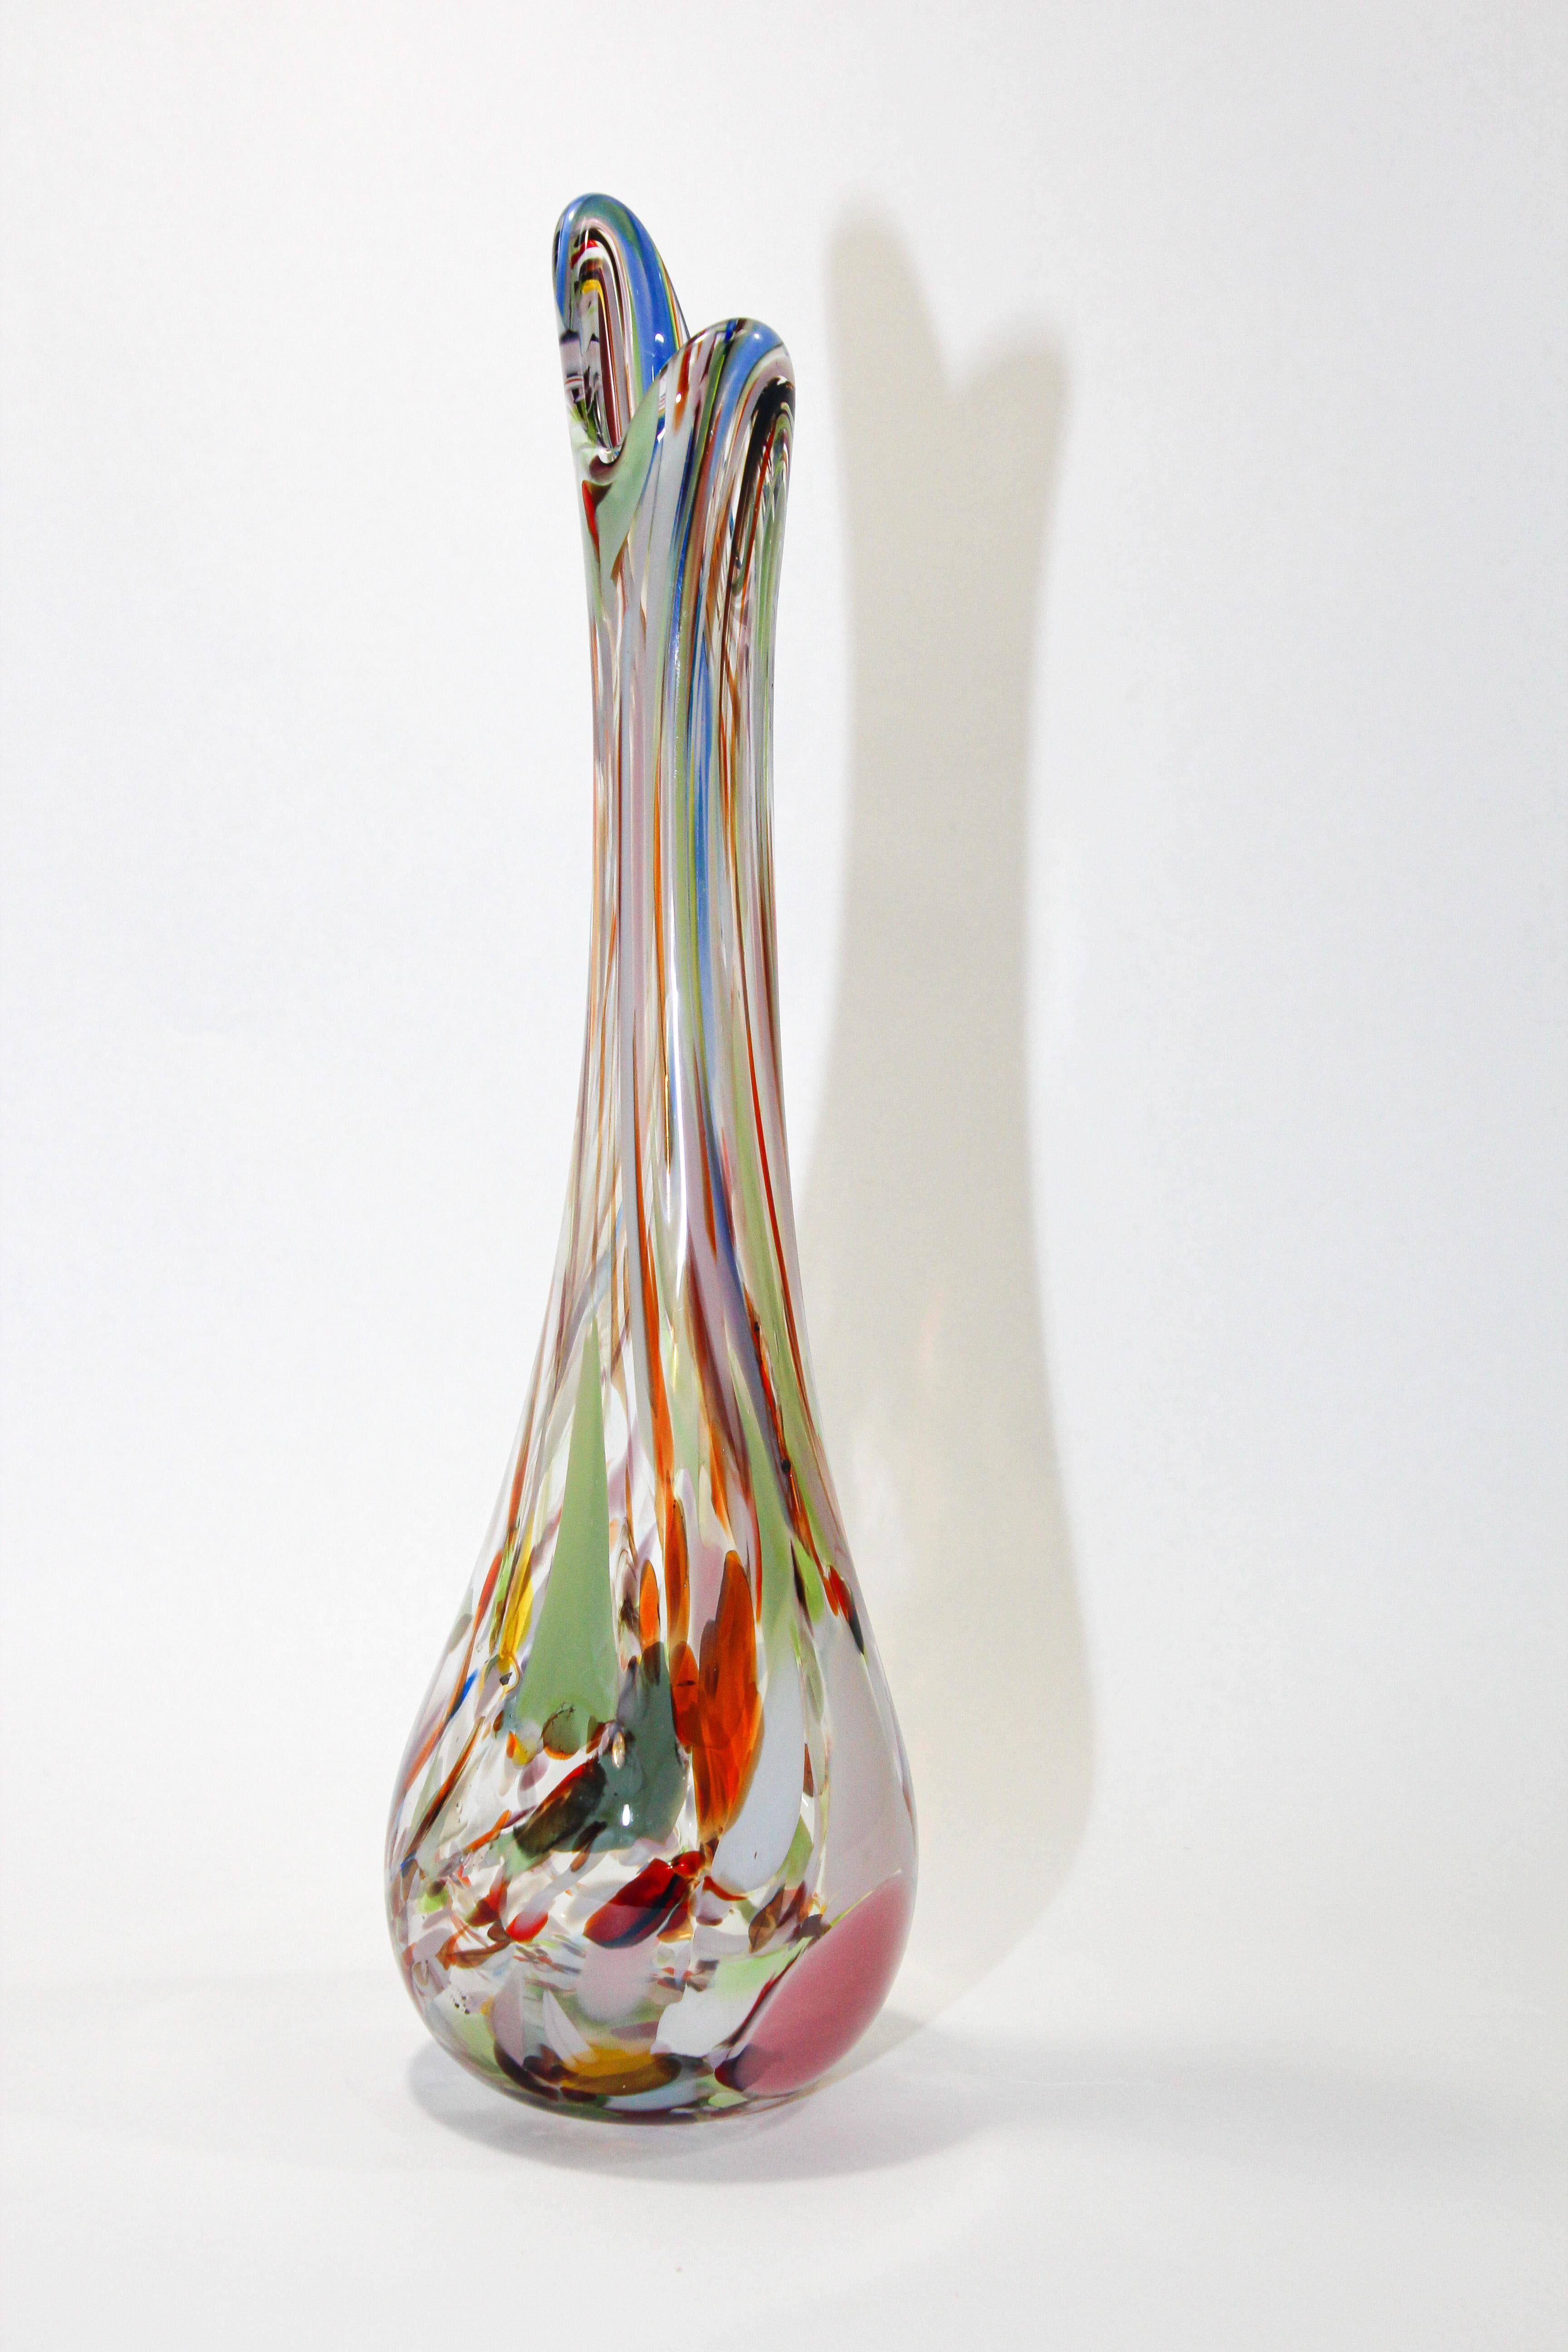 Vintage Murano Venetian vase en verre d'art soufflé à la main dans des teintes multicolores.
Fabriqué à la main avec la technique du verre soufflé et de la décoration Murrina. 
Un beau vase organique élégant avec une forme originale intéressante,